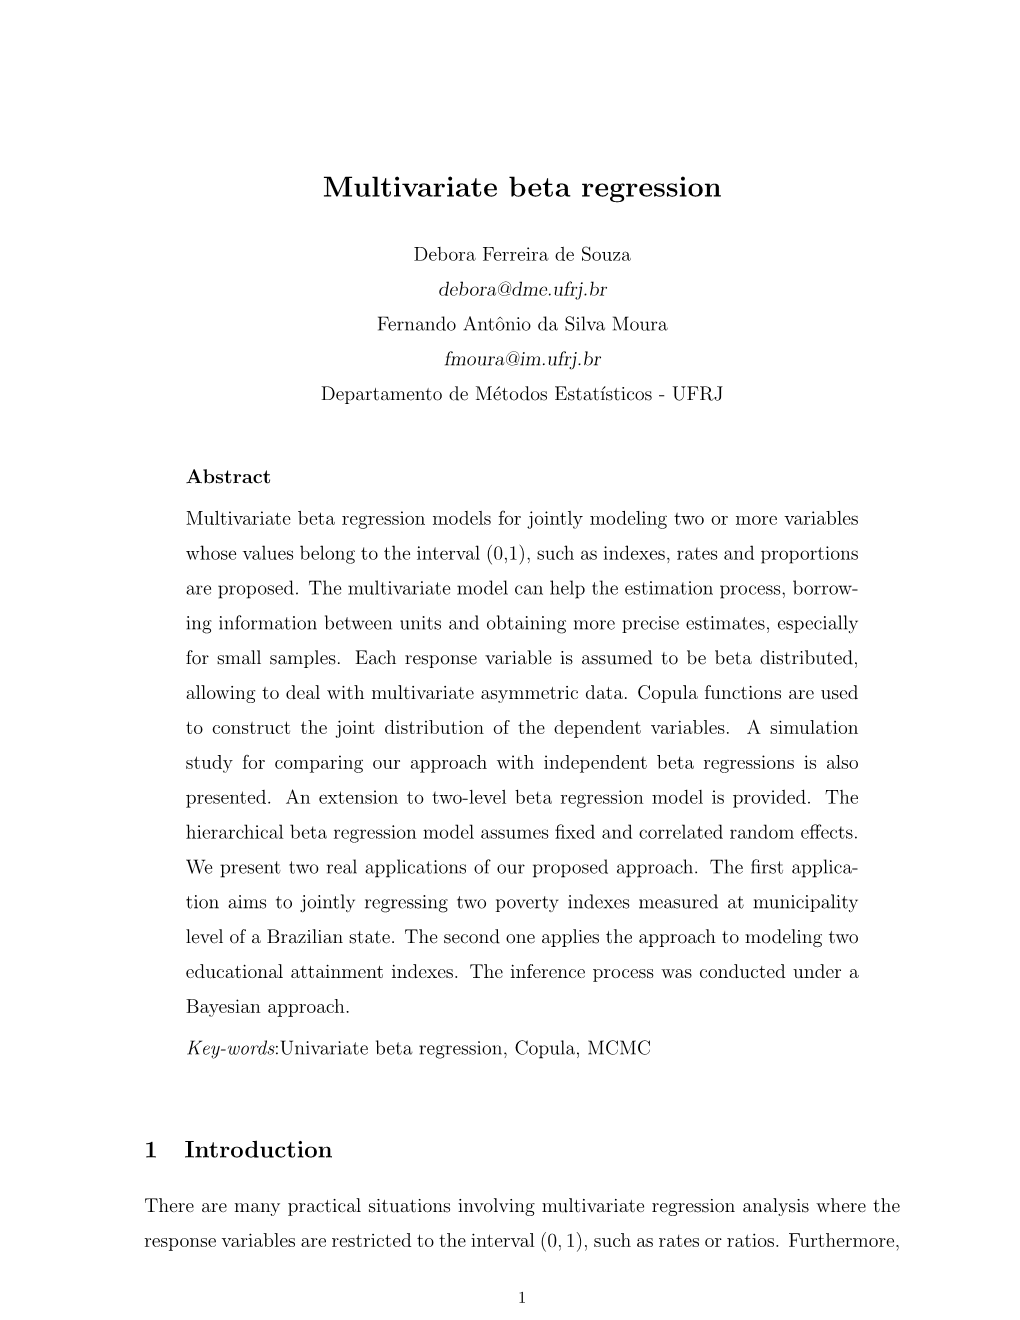 Multivariate Beta Regression